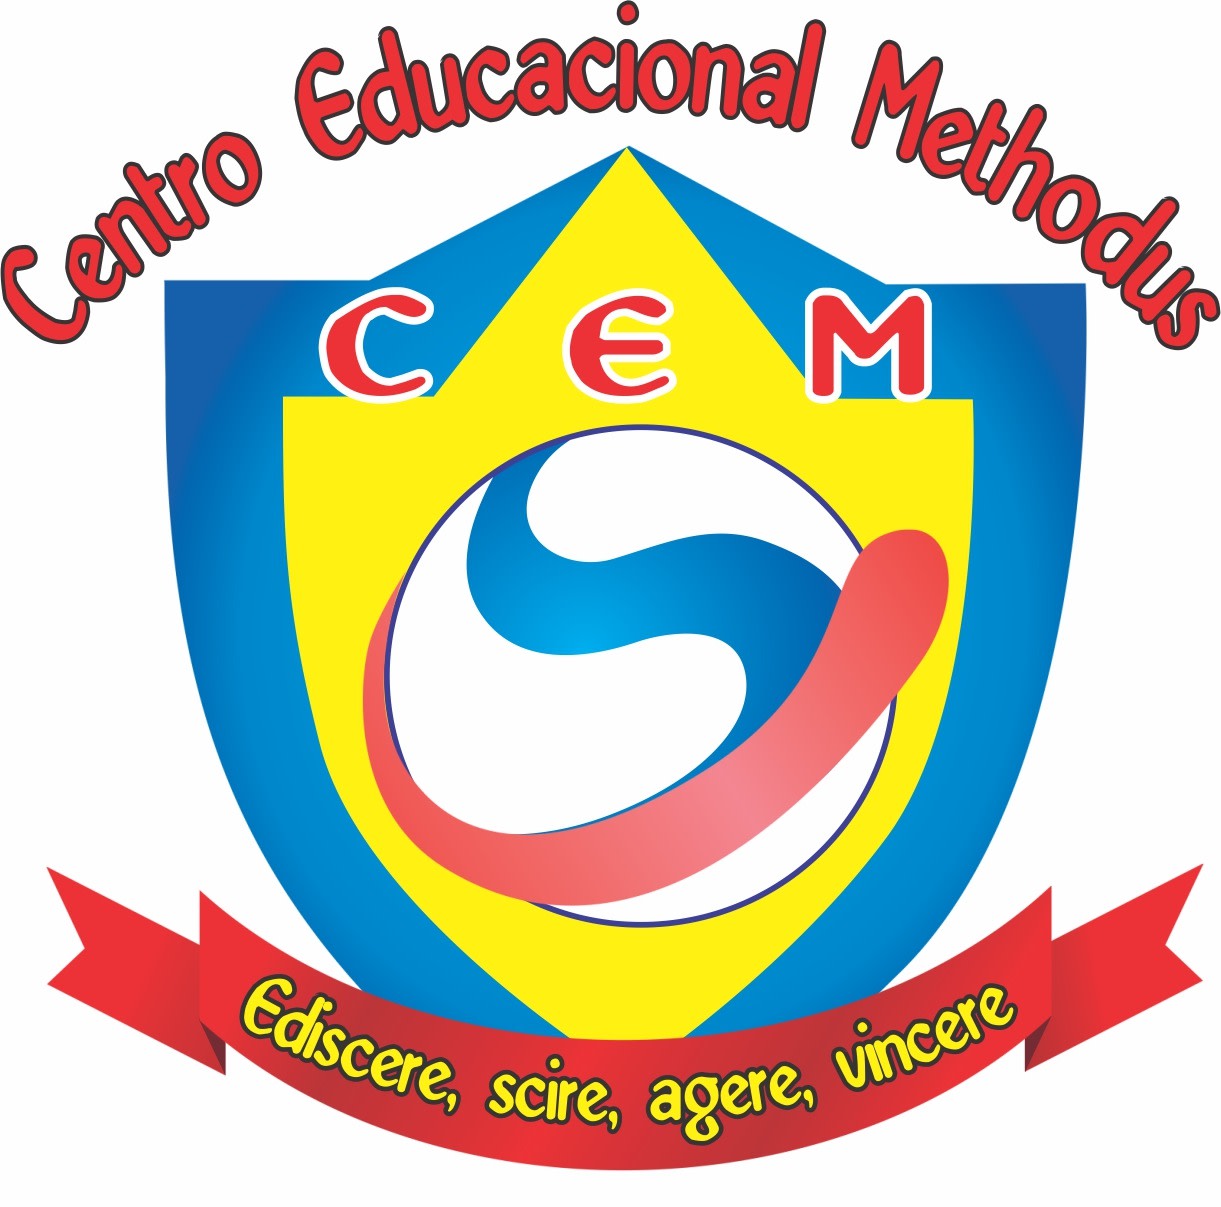 Centro Educacional Methodus